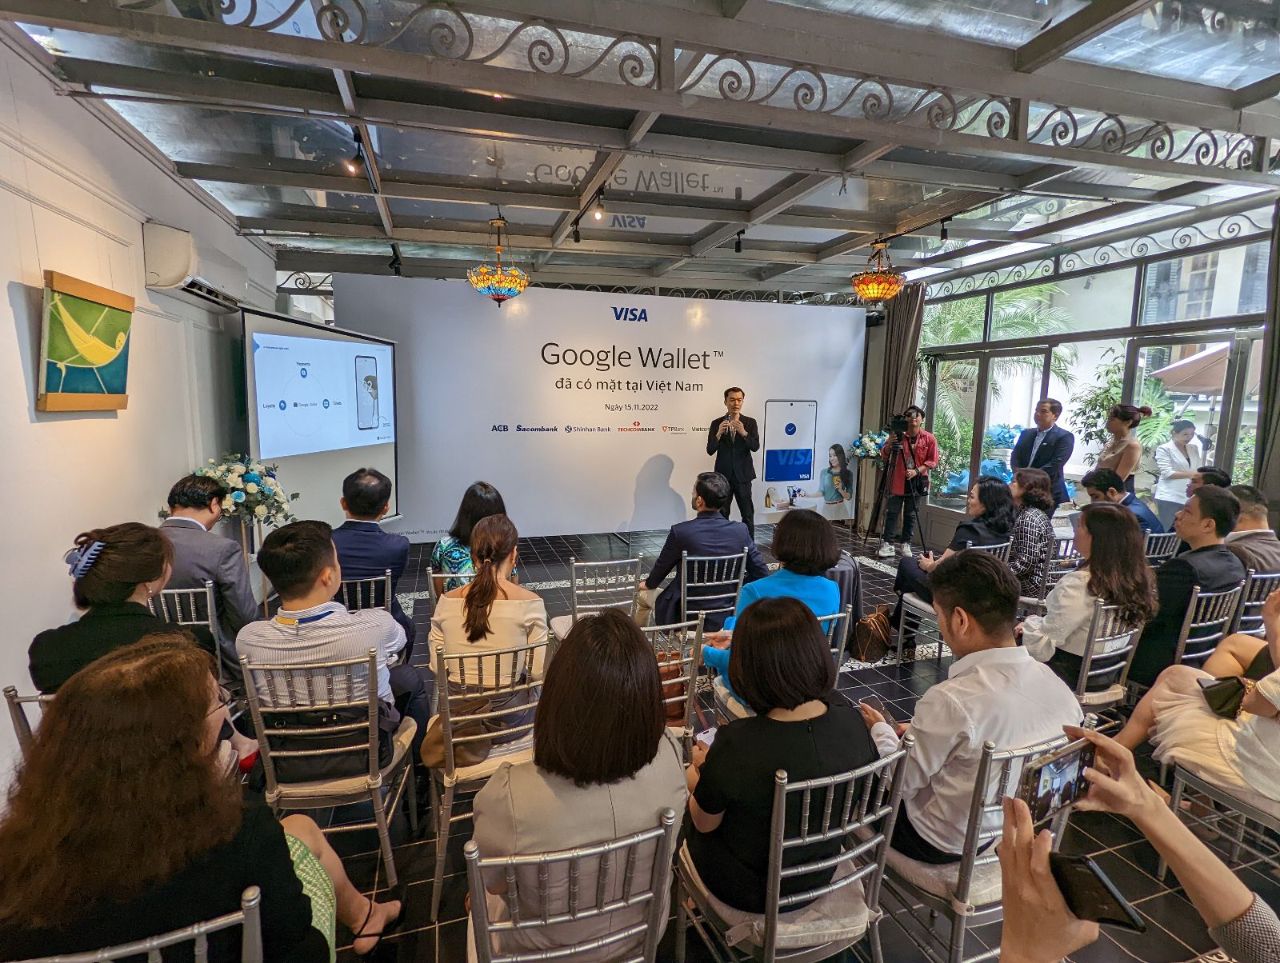 02 Ông Chen Way Trưởng nhóm Phát triển Đối tác của Google Wallet Google Châu Á Thái Bình Dương Google Wallet đã có mặt tại Việt Nam